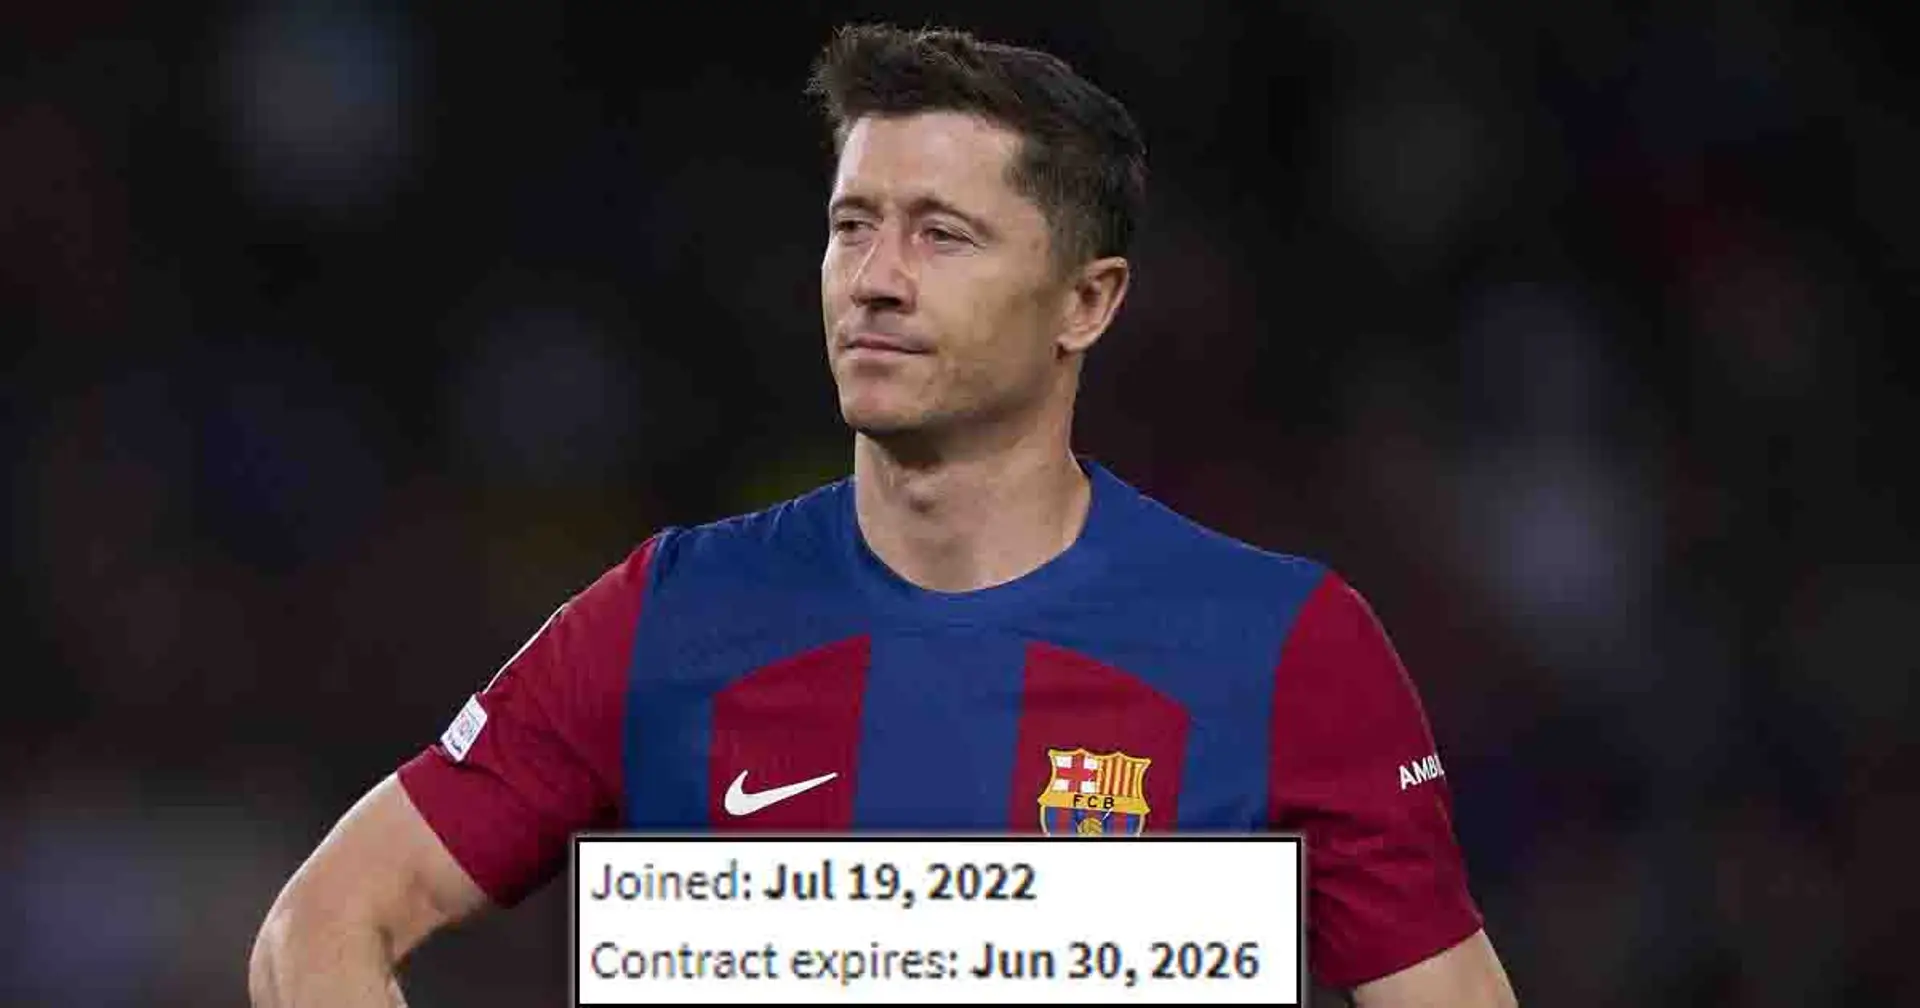 El Barcelona 'considerará ofertas' por Lewandowski, revelado el verdadero motivo (fiabilidad: 4 estrellas)